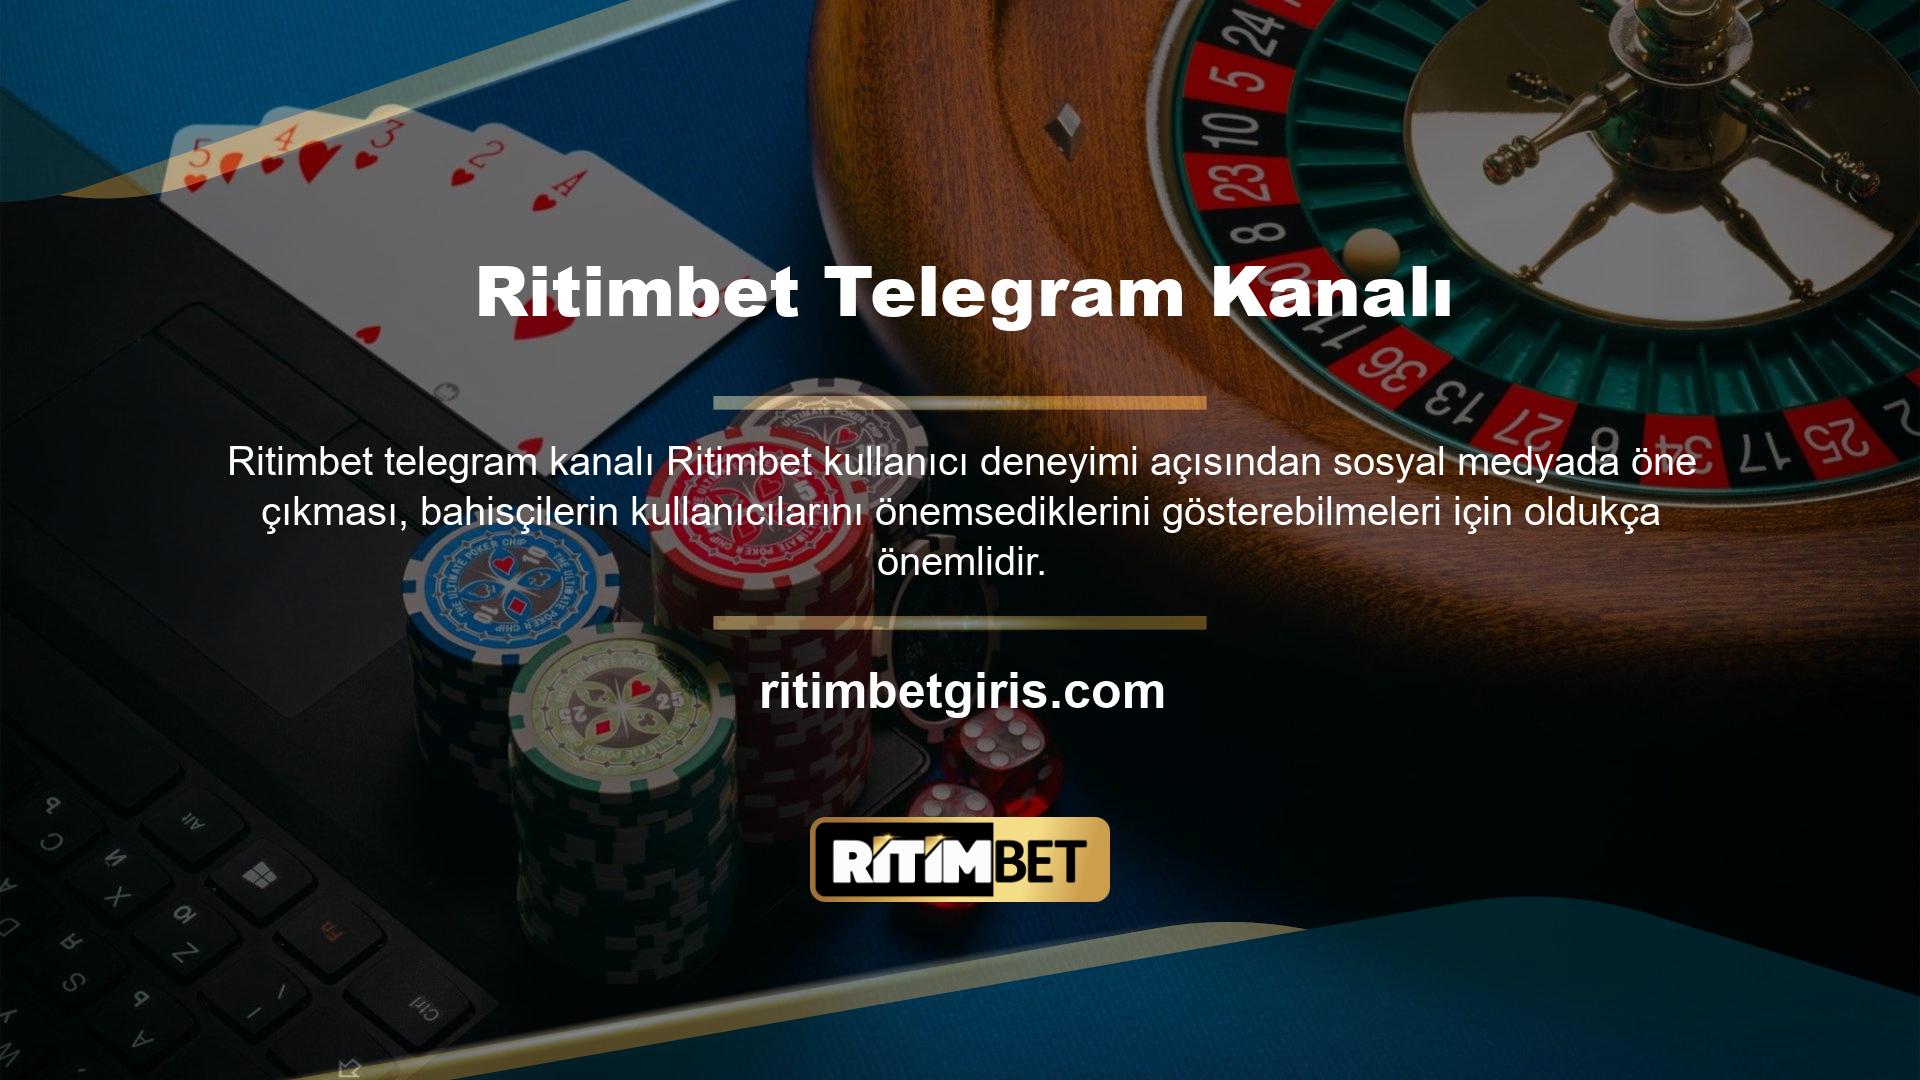 Ritimbet müşteri destek ekibi, sitenin yardım bölümü üzerinden ve ayrıca Ritimbet Telegram kanalı üzerinden 7/24 canlı destek sunmaktadır